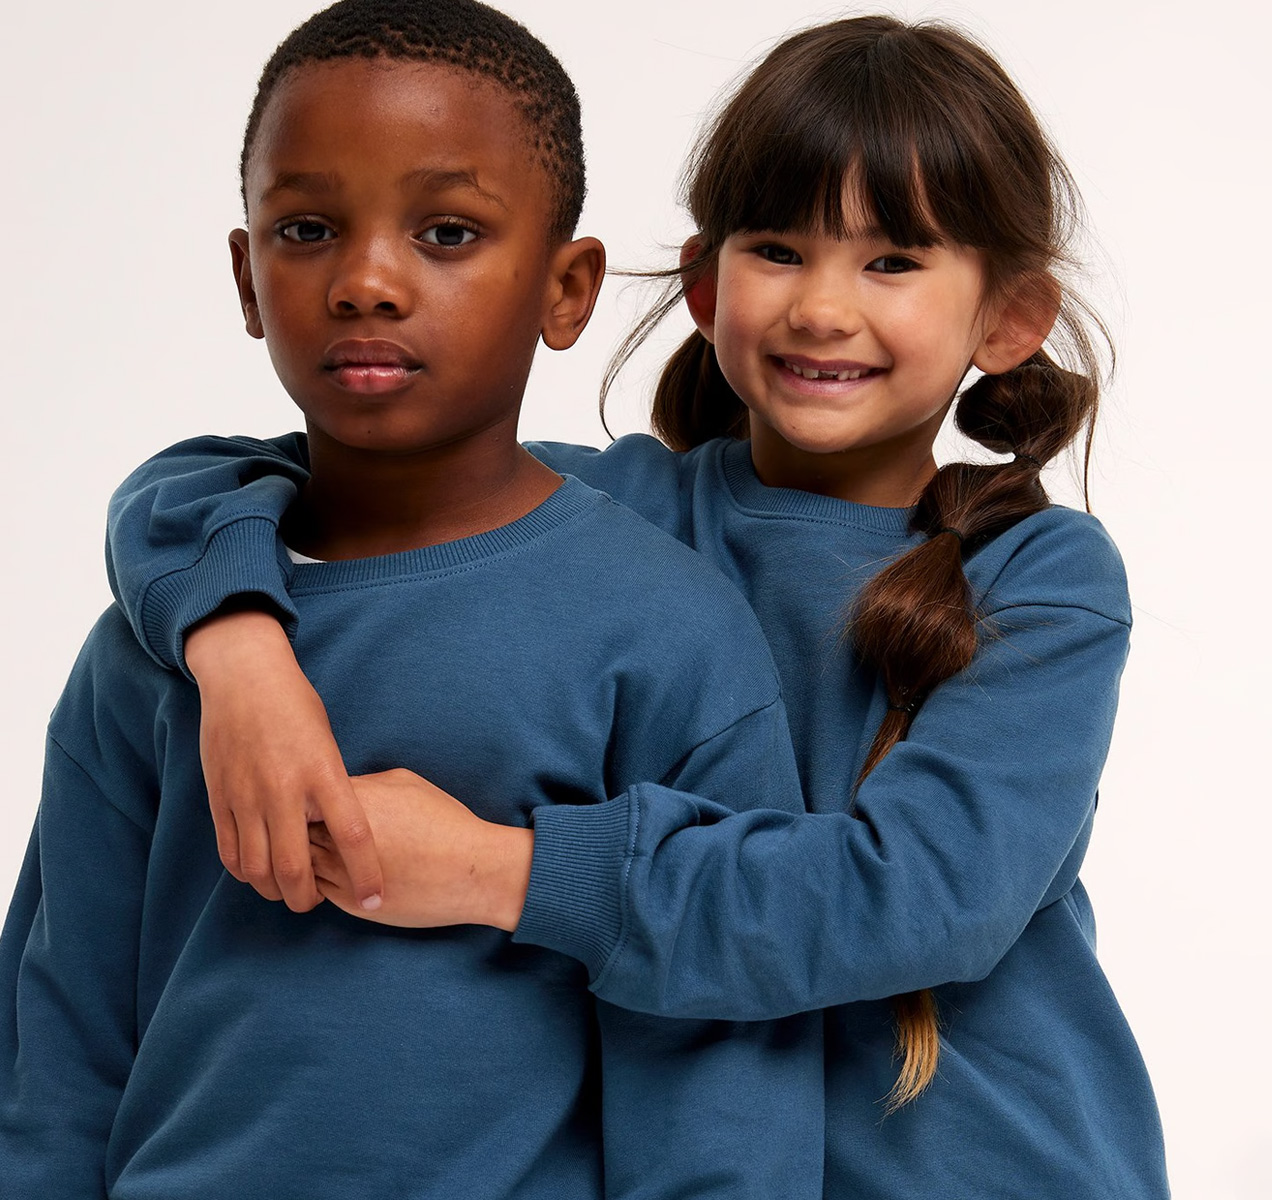 En pojke och en flicka med matchande mjukisset.